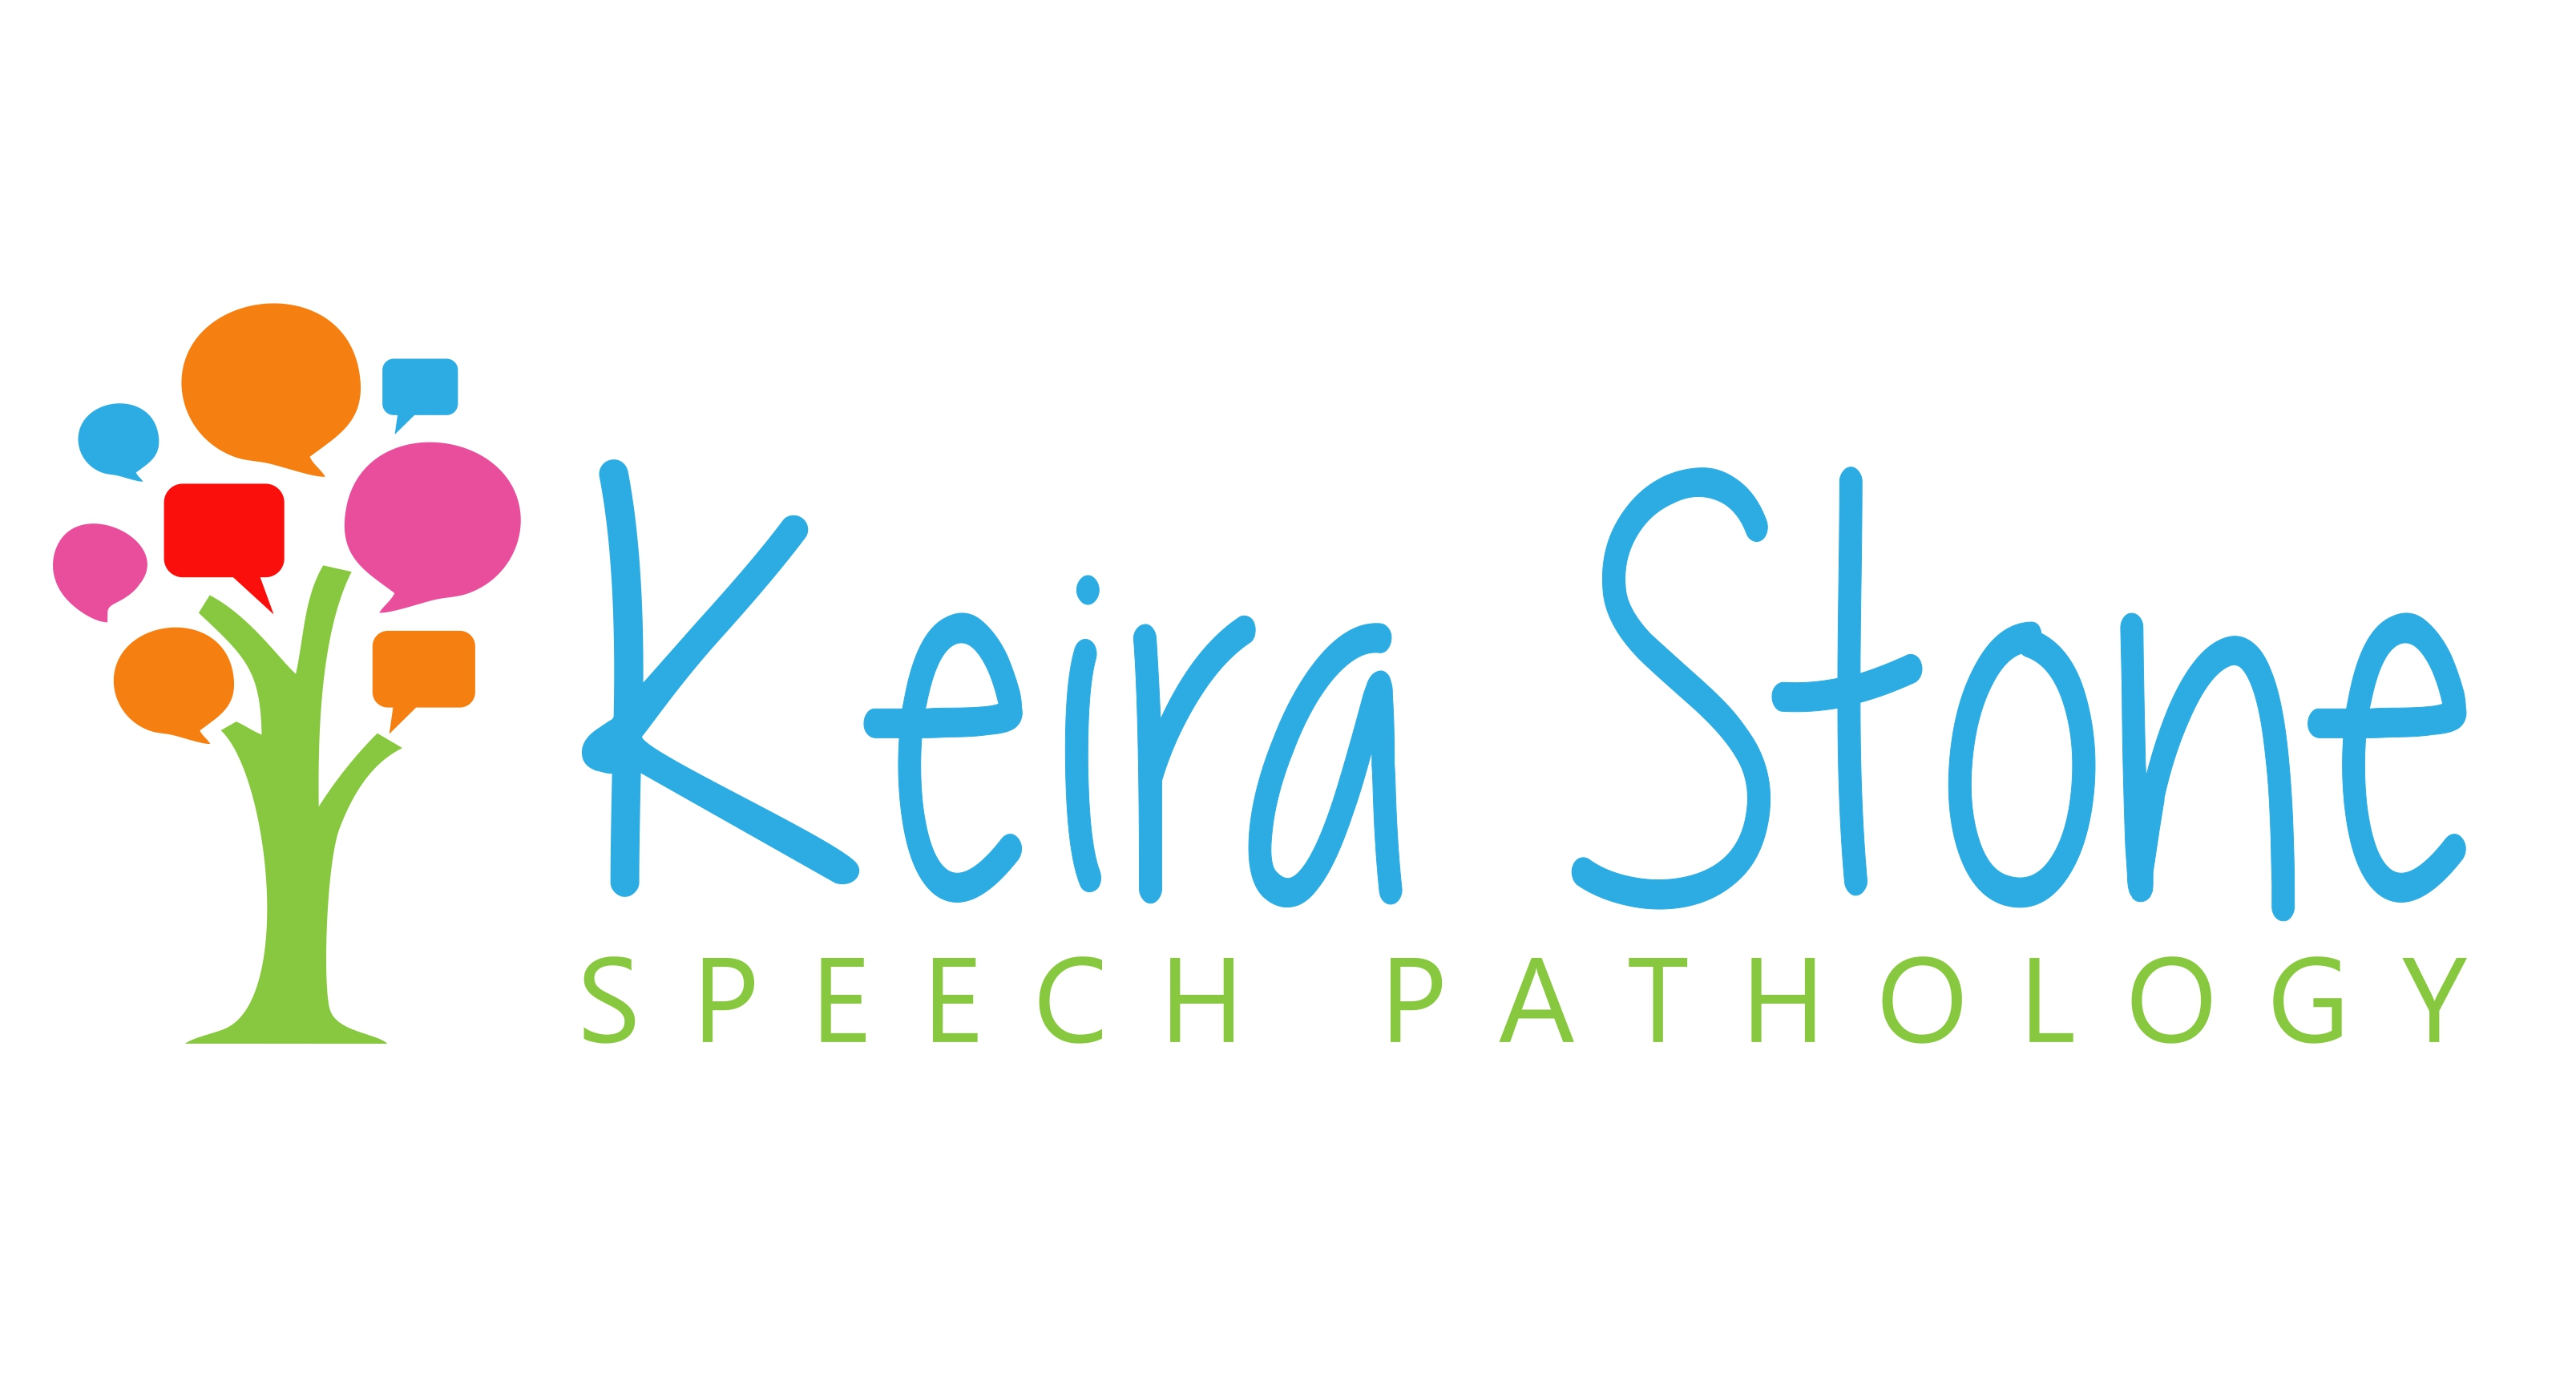 Keira Stone Speech Pathology